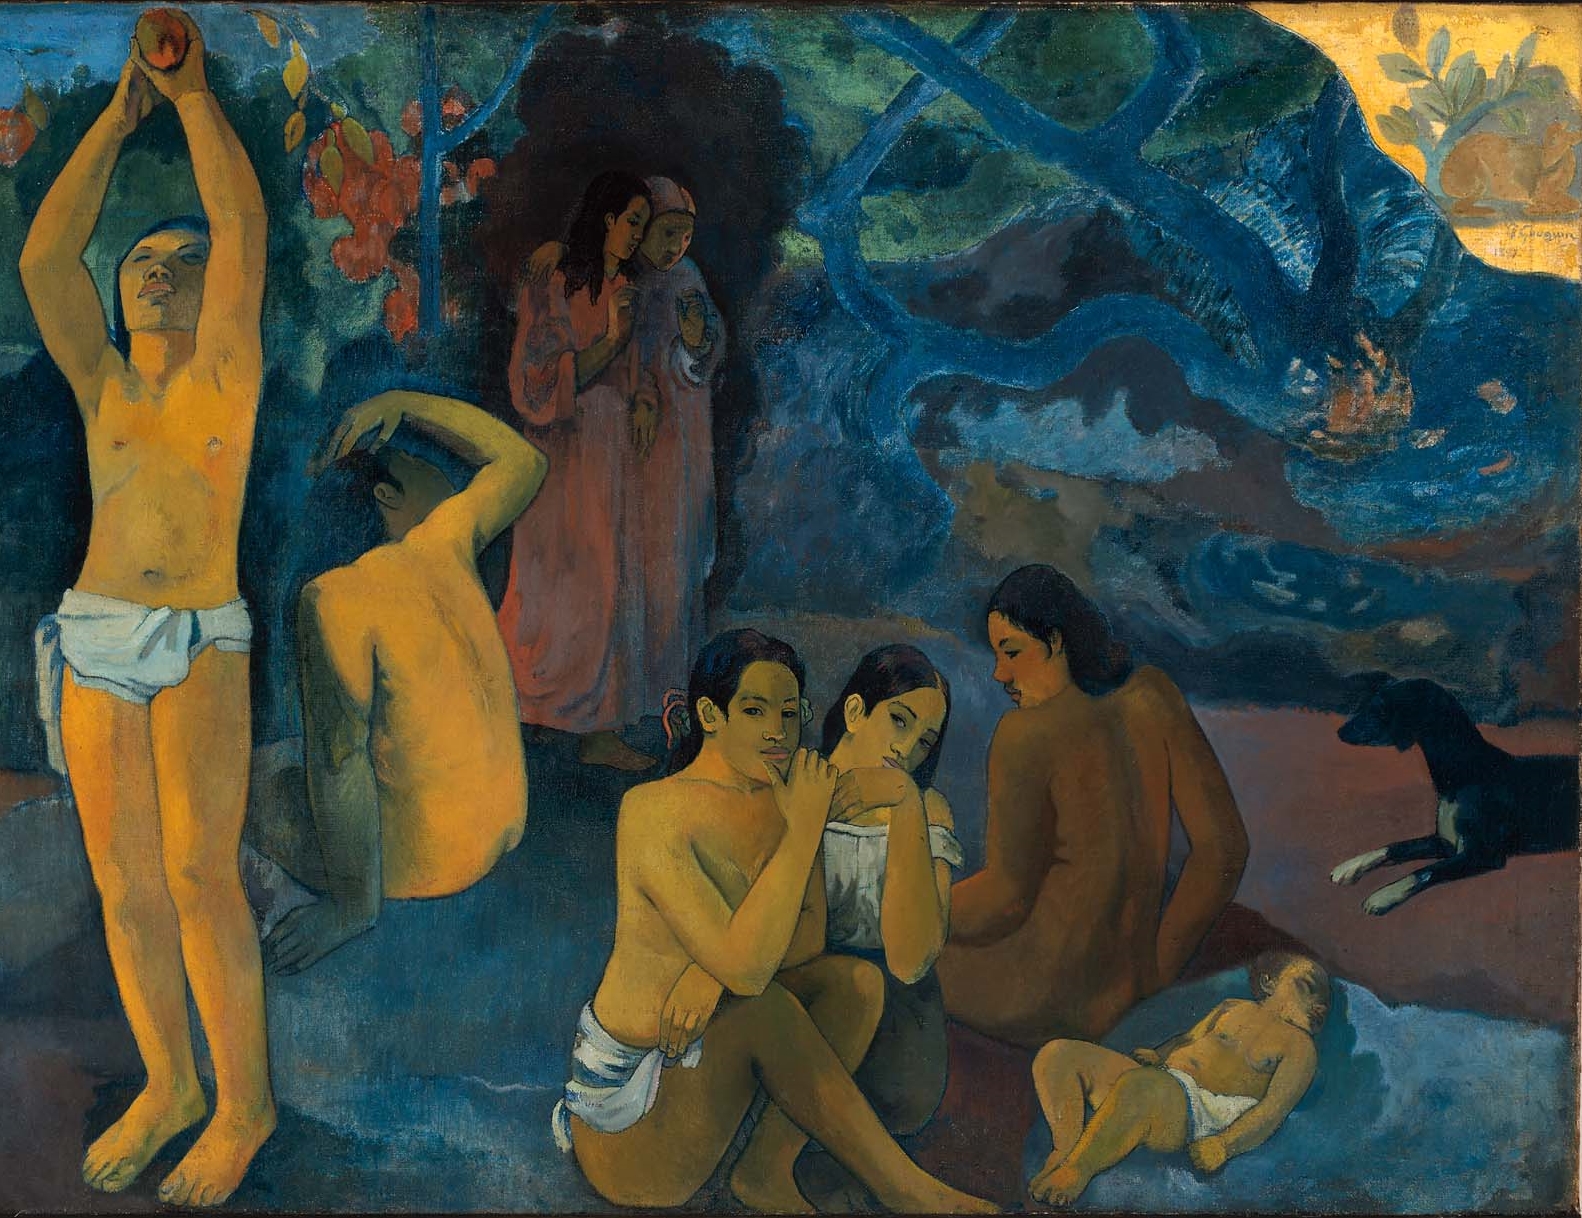 Paul+Gauguin-1848-1903 (430).jpg